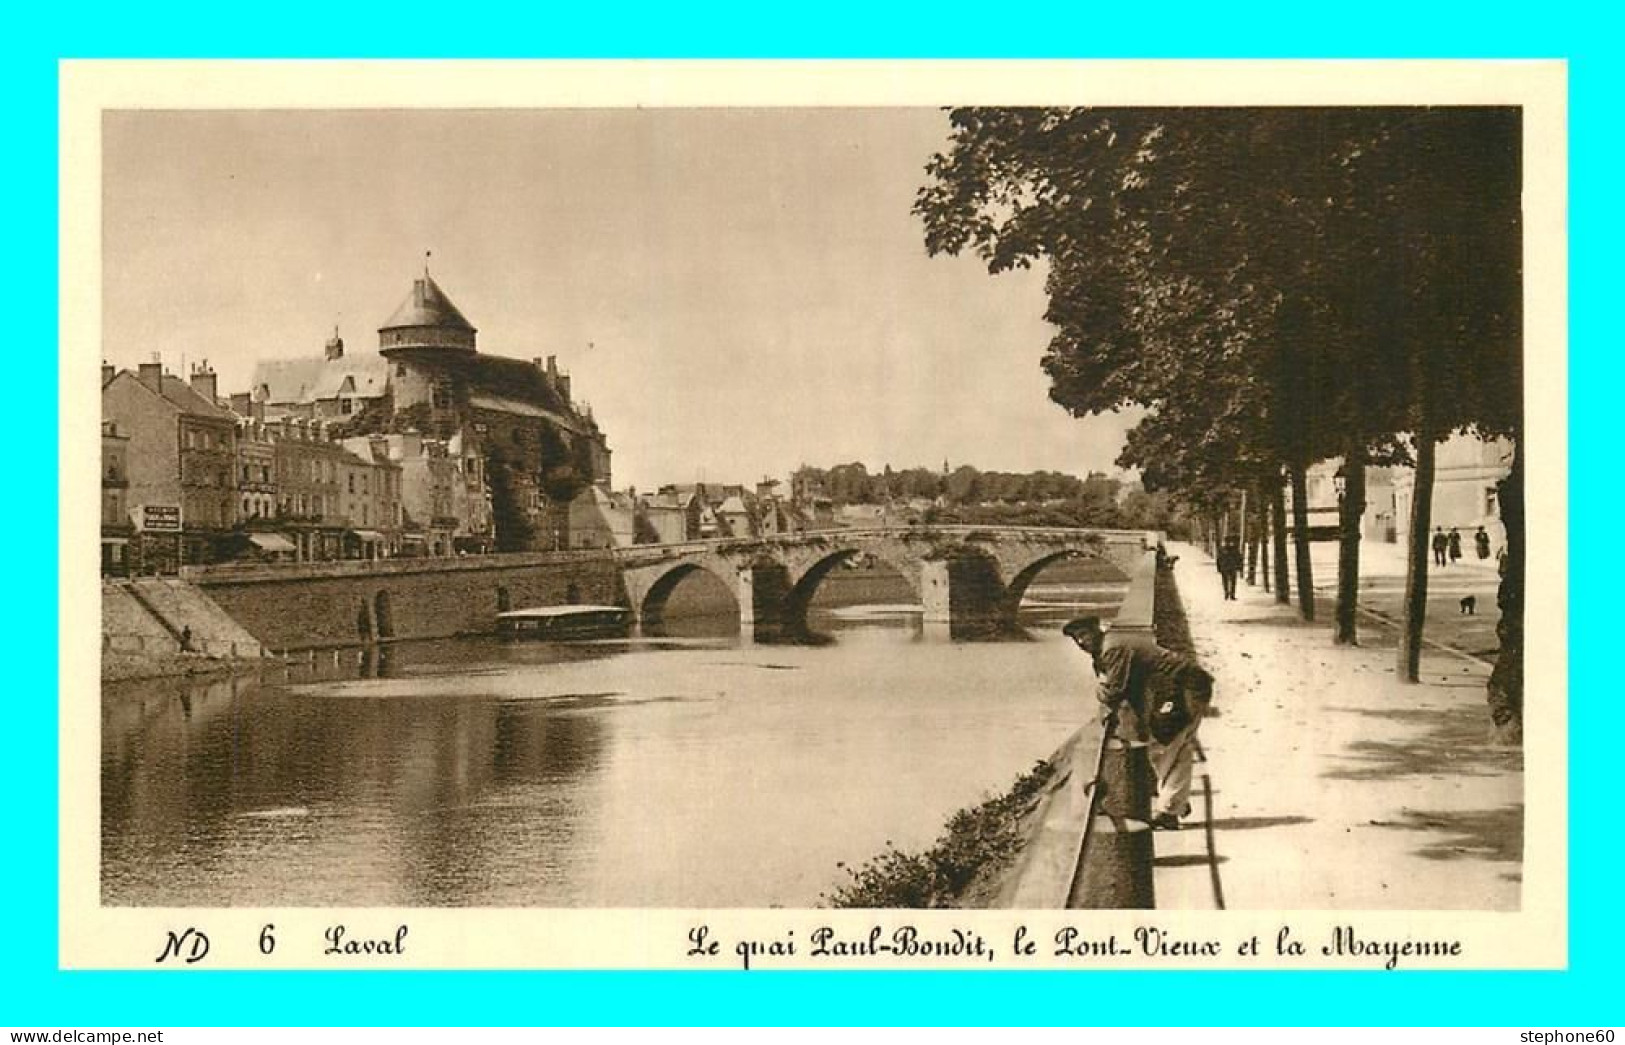 A704 / 259 38 - LAVAL Quai Paul Bondit Le Pont Vieux - Laval